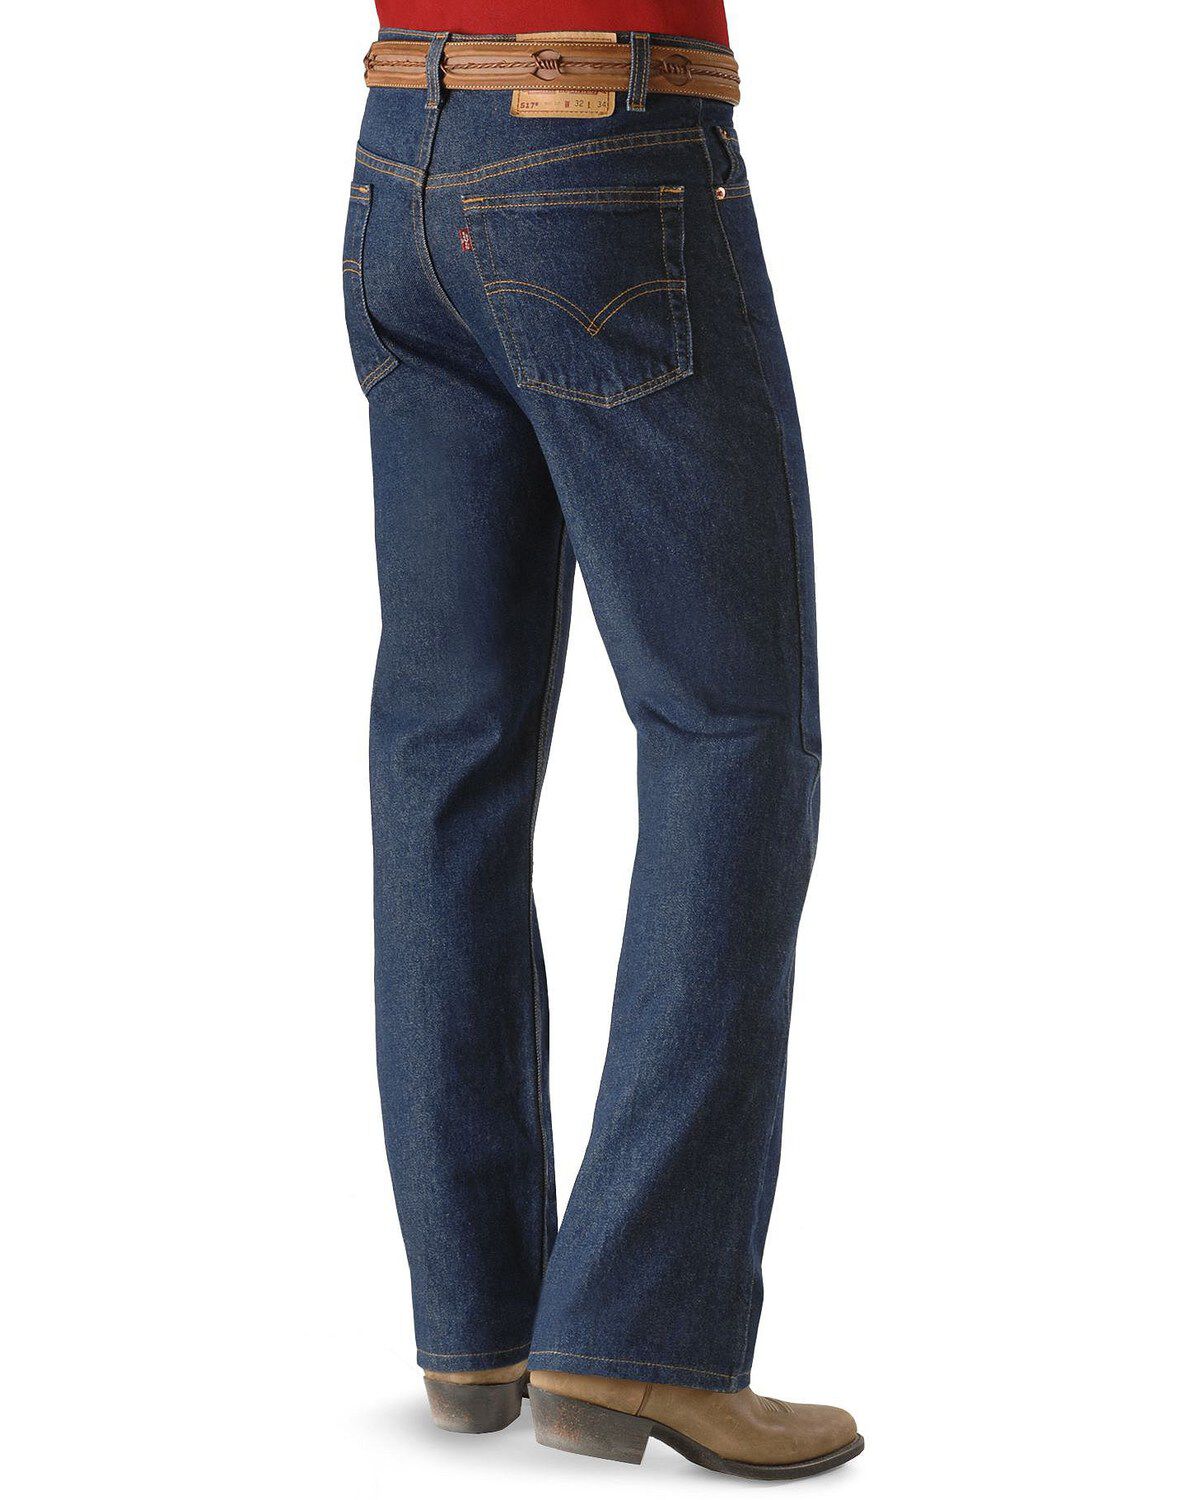 levis 517 jeans